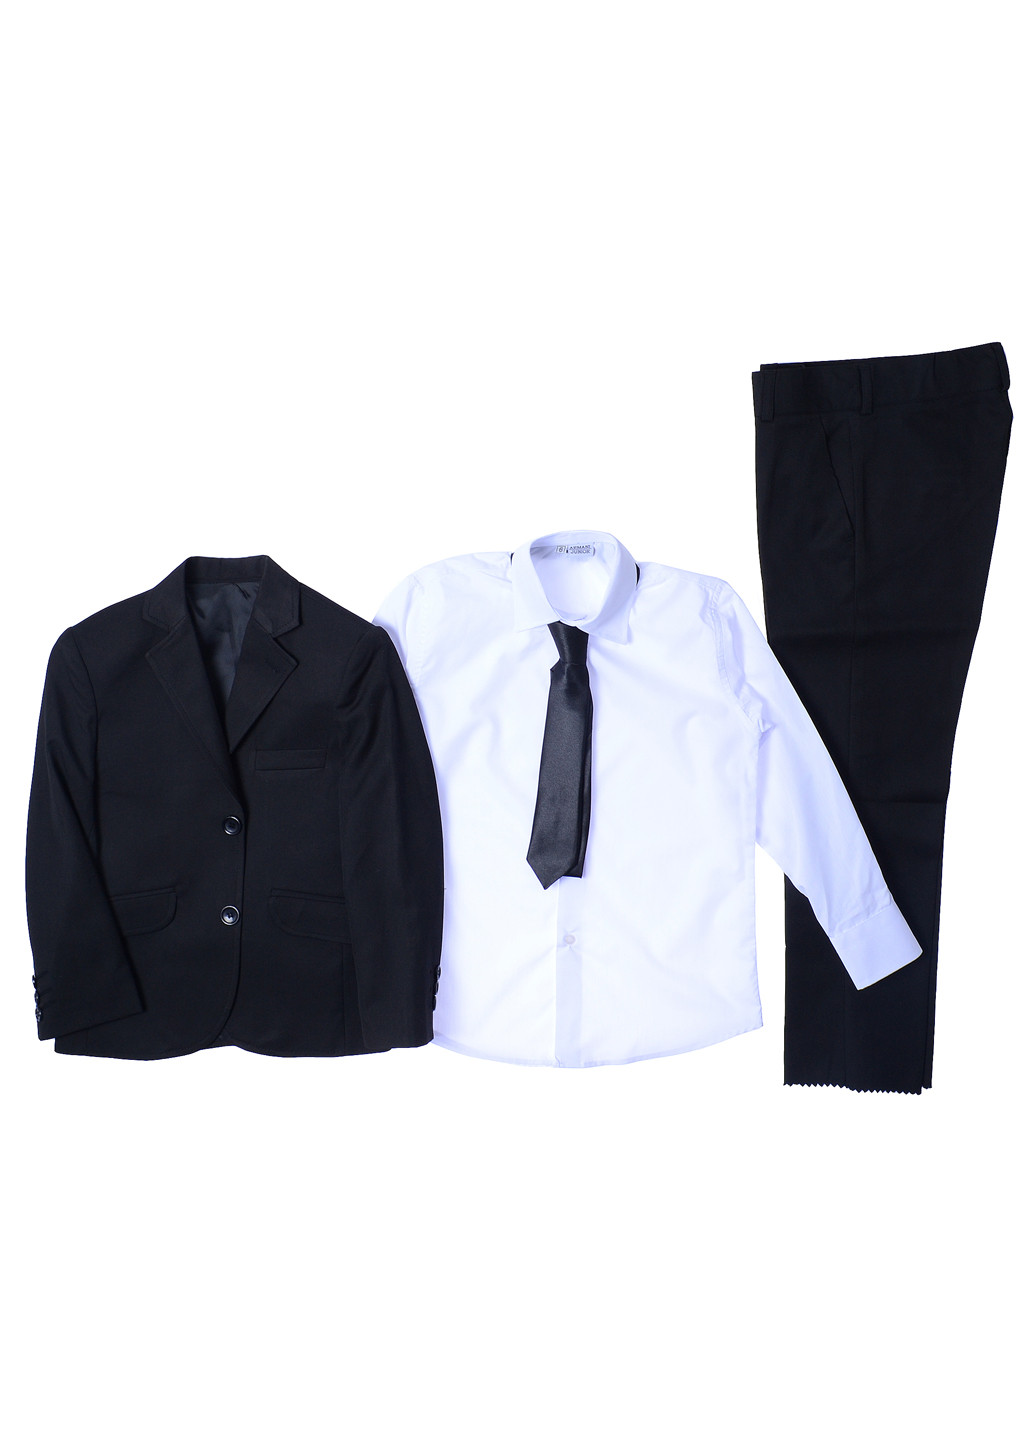 Черный демисезонный костюм (пиджак, брюки, рубашка, галстук) тройка Jnf